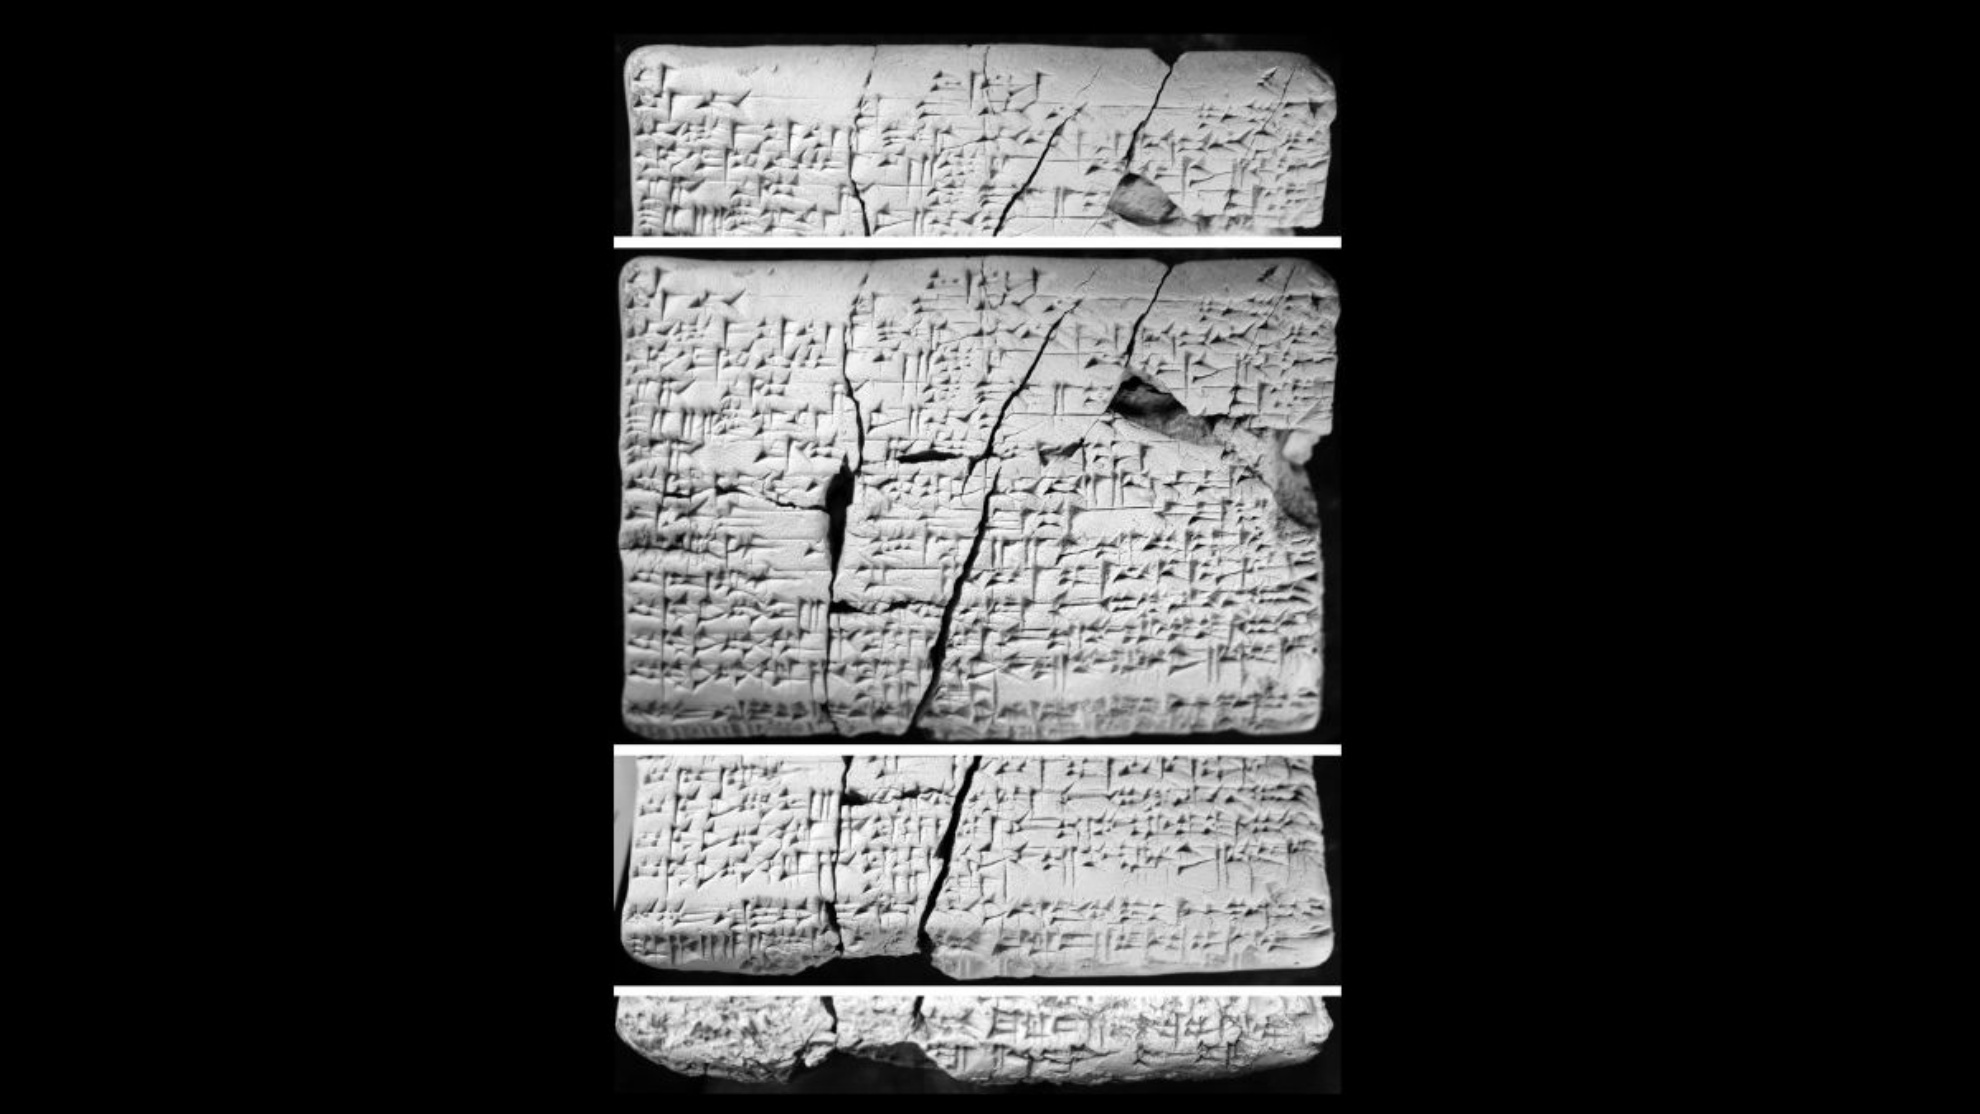 Les tablettes ont été trouvées en Irak il y a environ 30 ans. Les chercheurs ont commencé à les étudier en 2016 et ont découvert qu'ils contenaient des détails en akkadien sur la langue amorite "perdue".